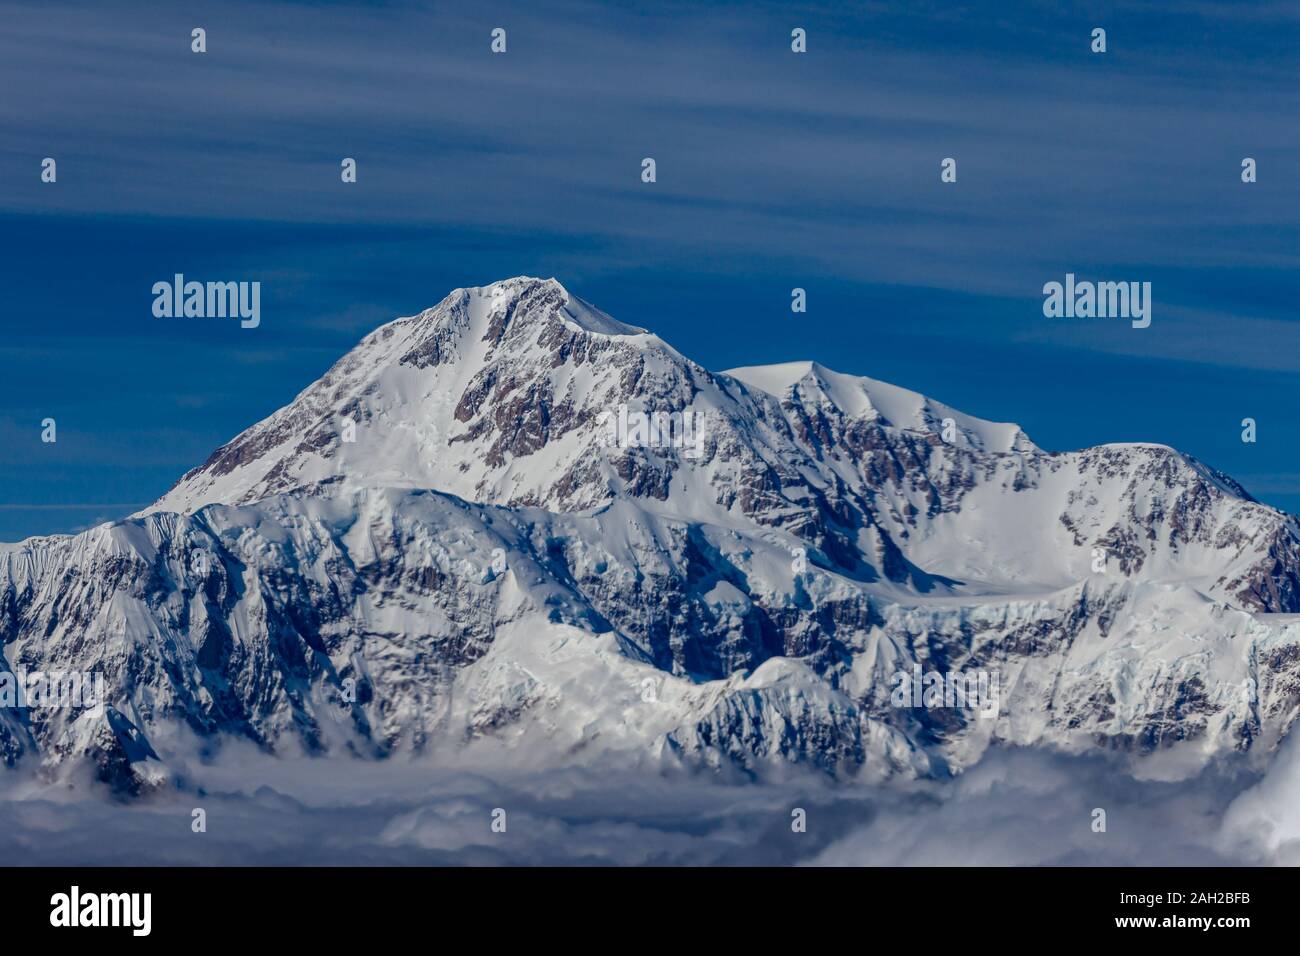 La montagna più alta nel Nord America, Denali, precedentemente noto come Mt. McKinley. Foto Stock